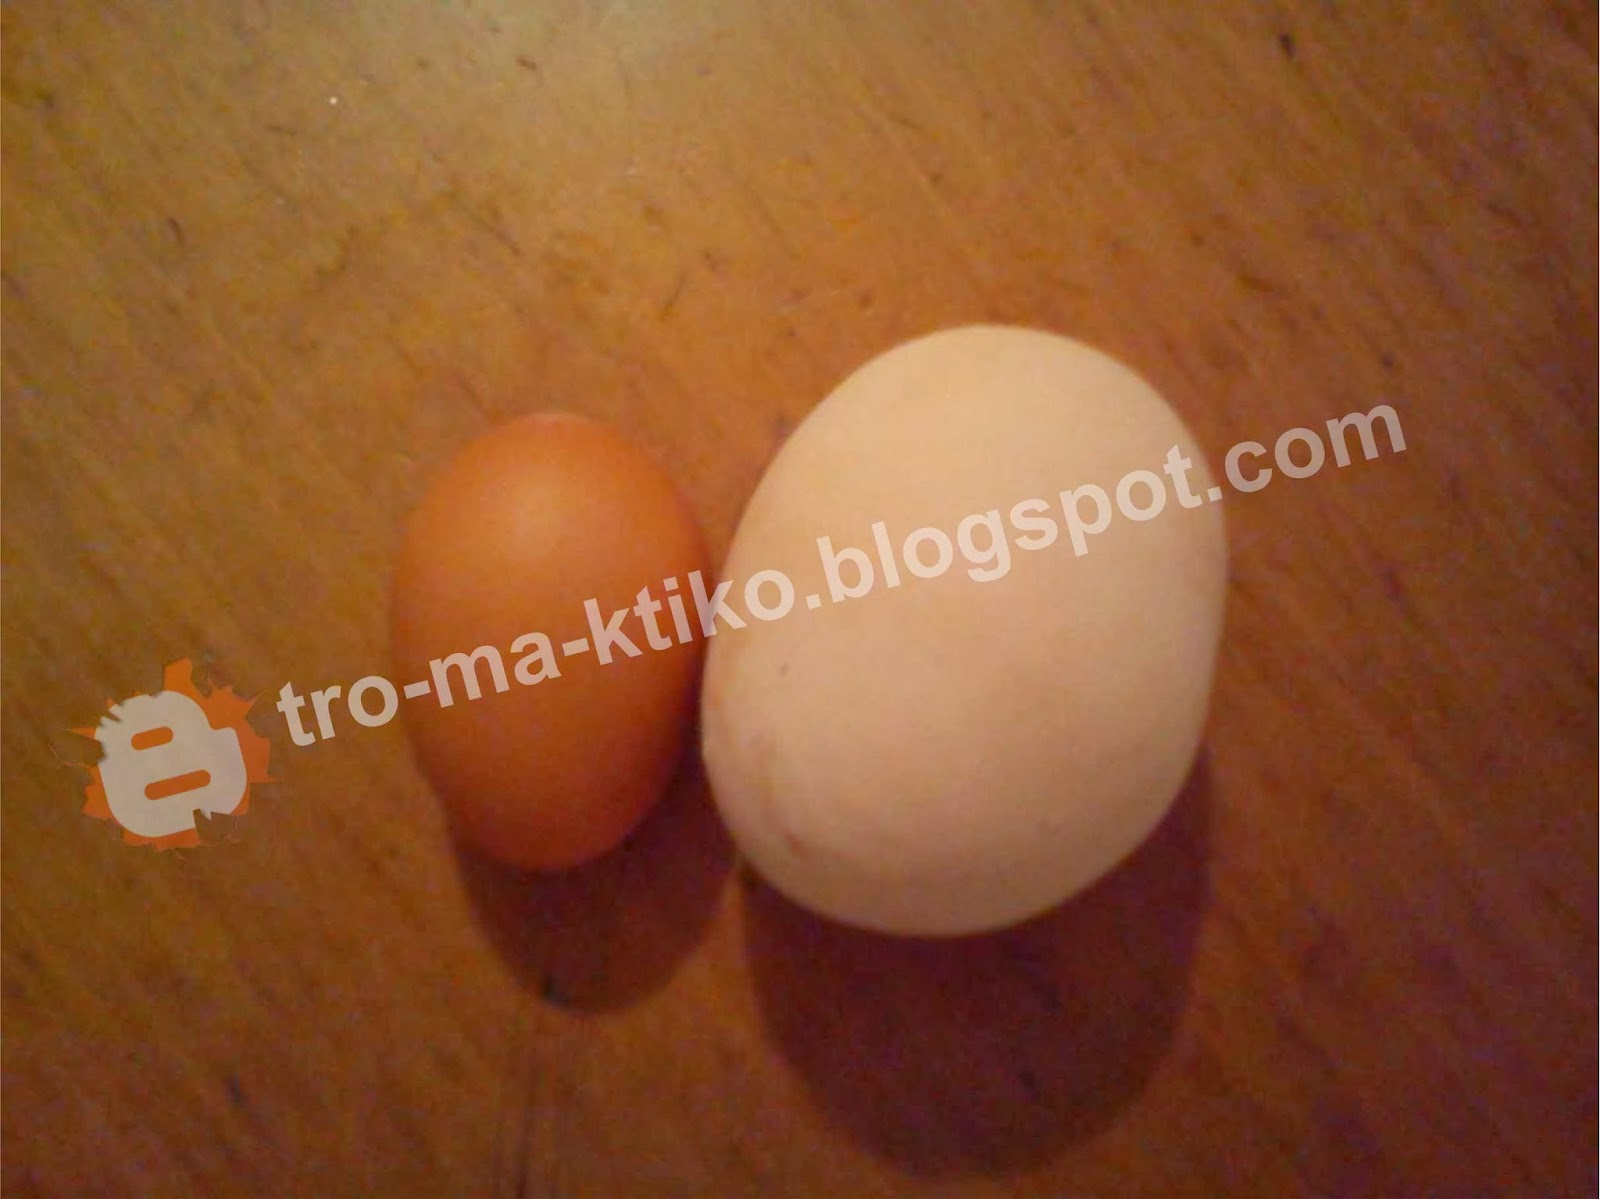 Ένα... τεράστιο αυγό κότας, μας έστειλε αναγνώστης από την Λευκάδια Νάουσας - Φωτογραφία 2